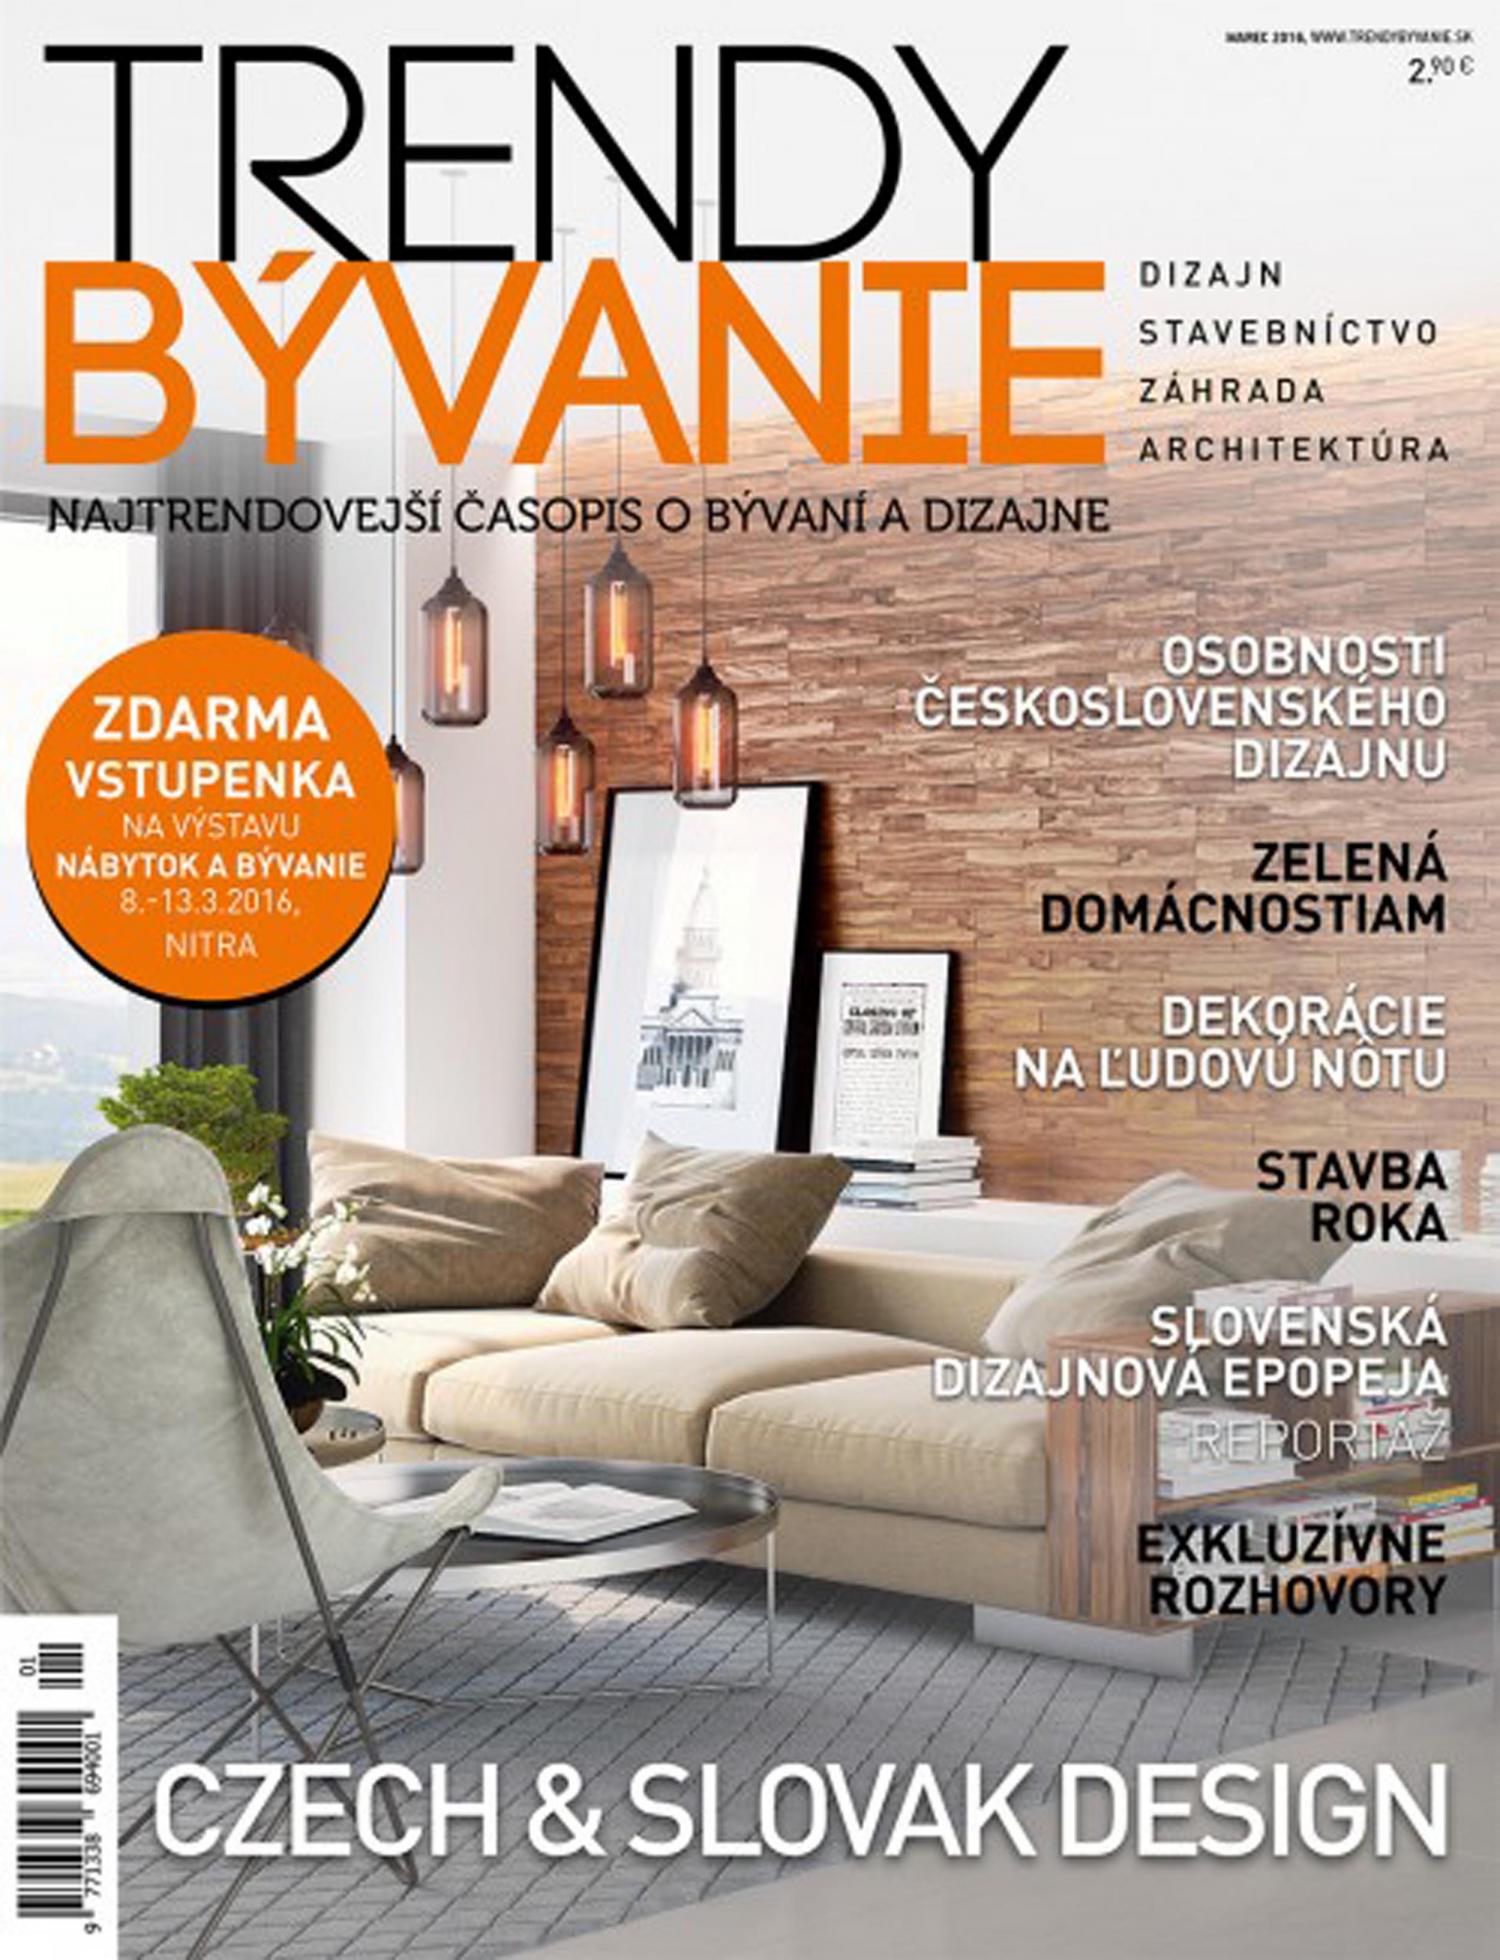 Trendy Bývanie, 03/2016, Slovenská dizajnová epopeja, 02-08